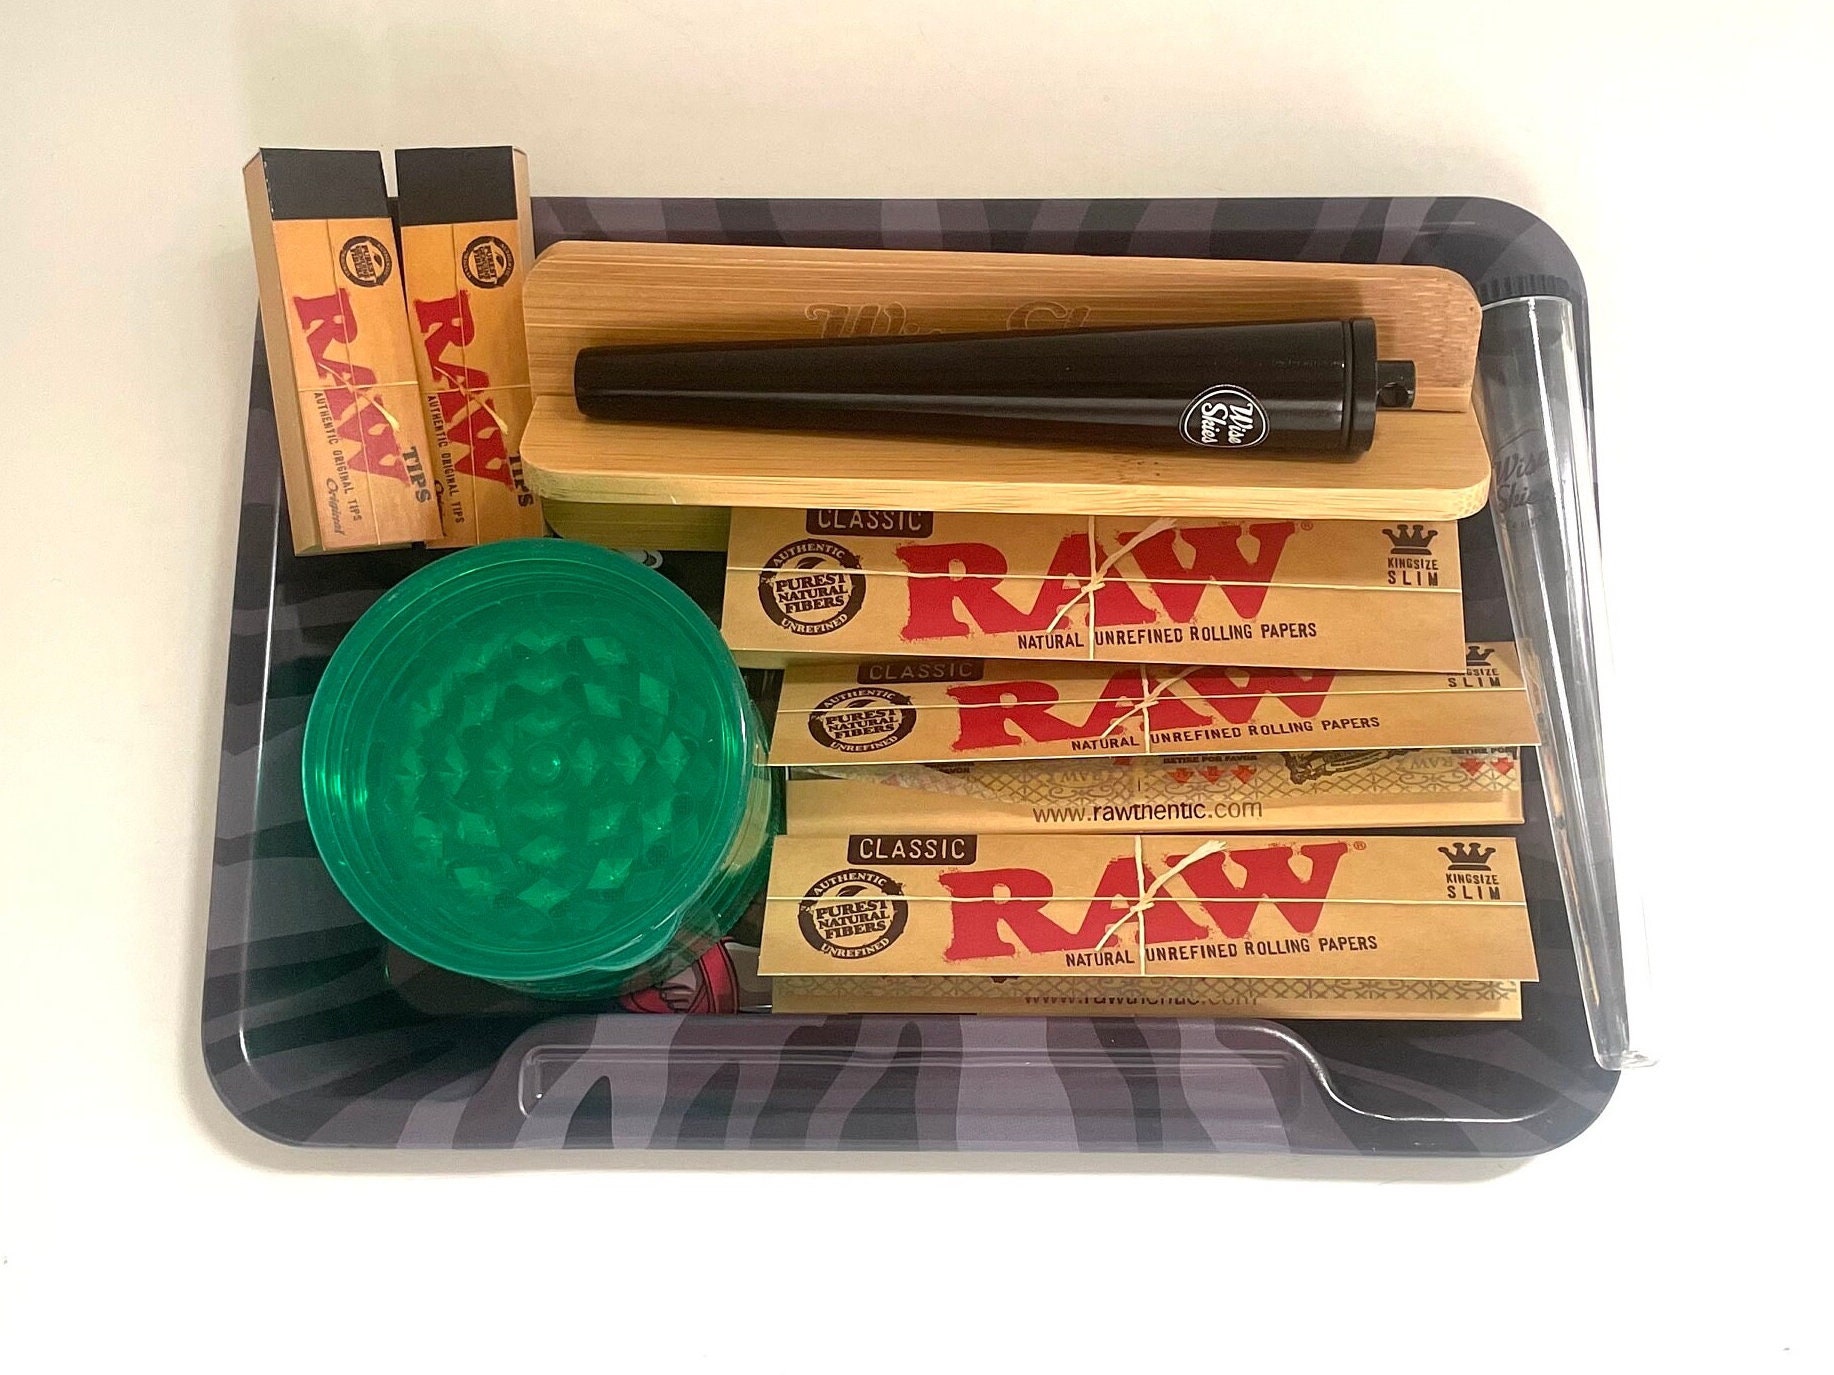 Raw Small Medium Rolling Tray Kit Gift Set Raw Classic Organic